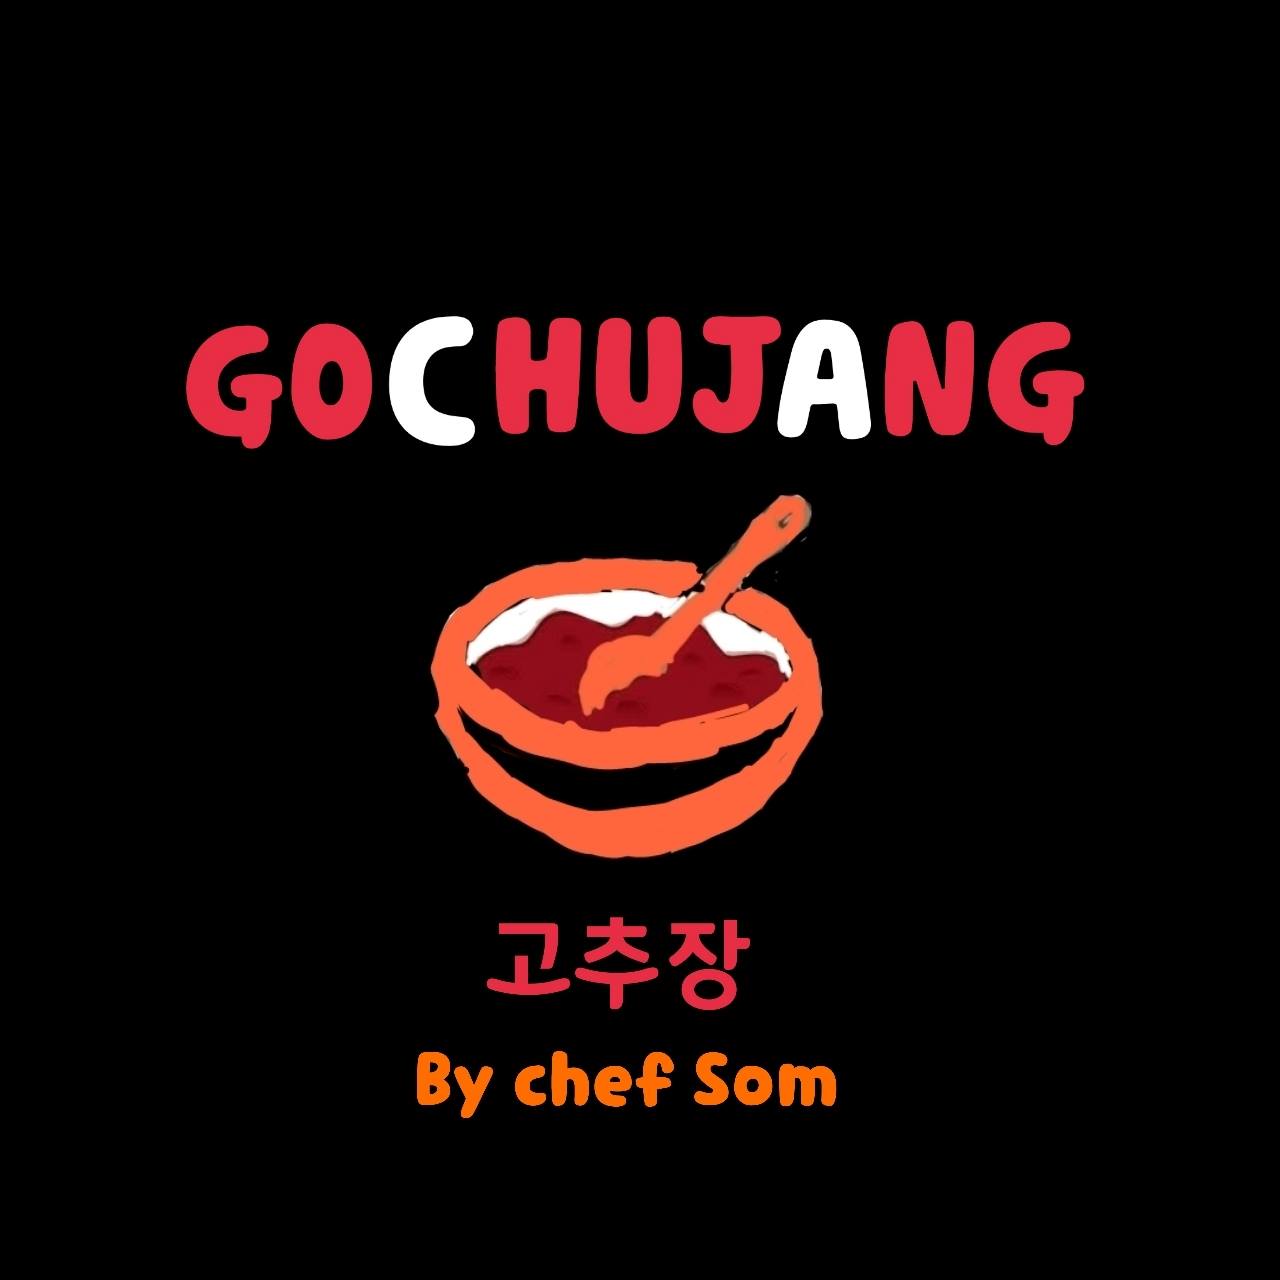 gochujang-by-chef-som